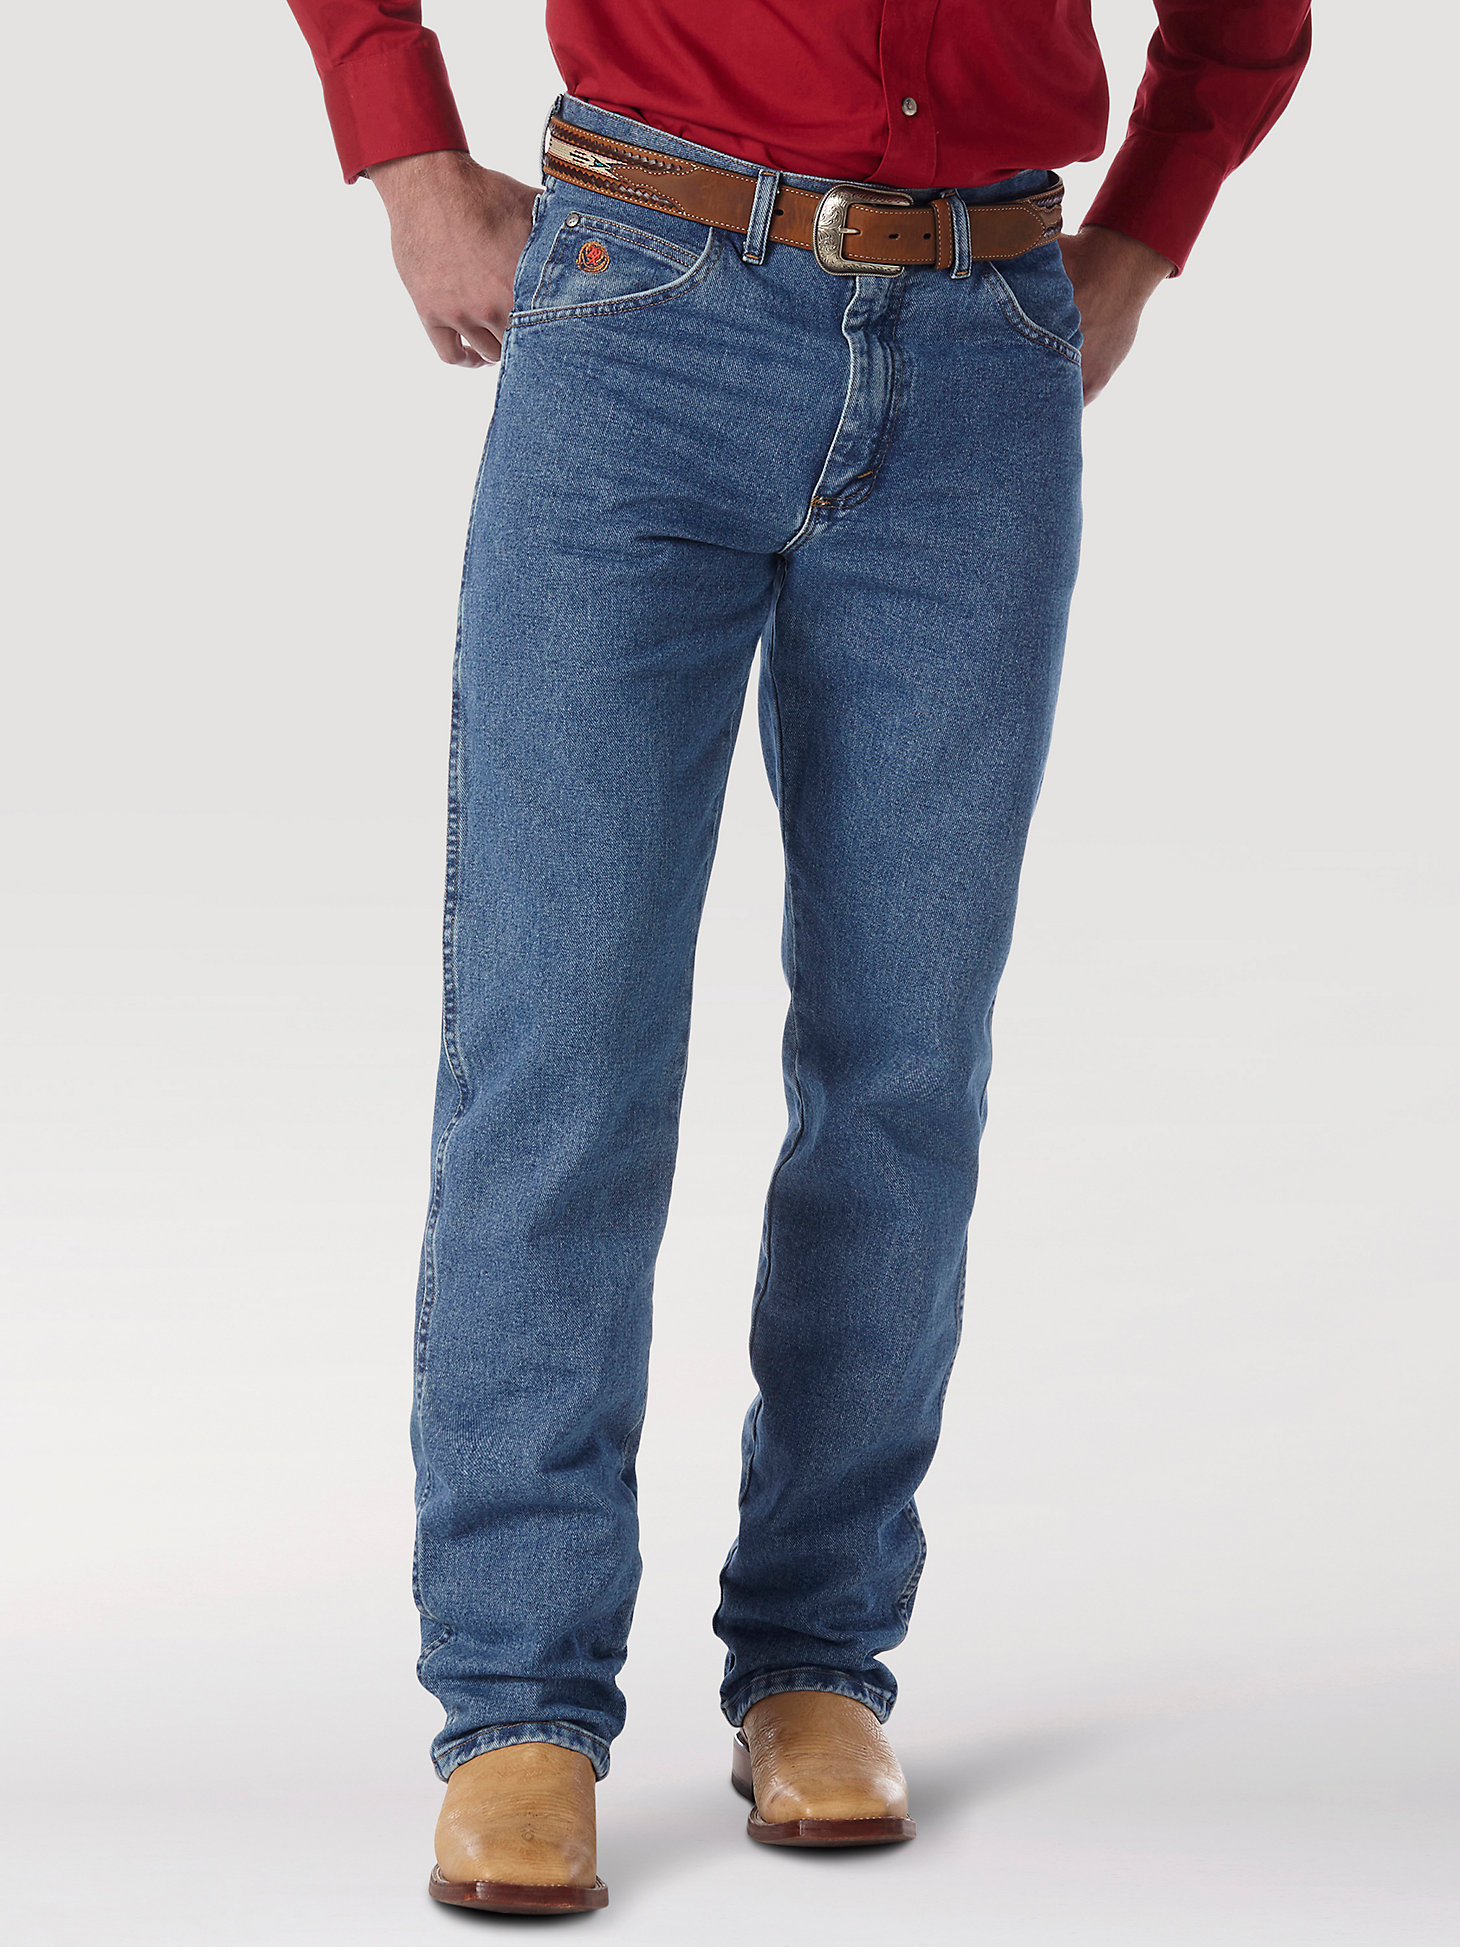 Arriba 43+ imagen wrangler 20x no 22 original jeans